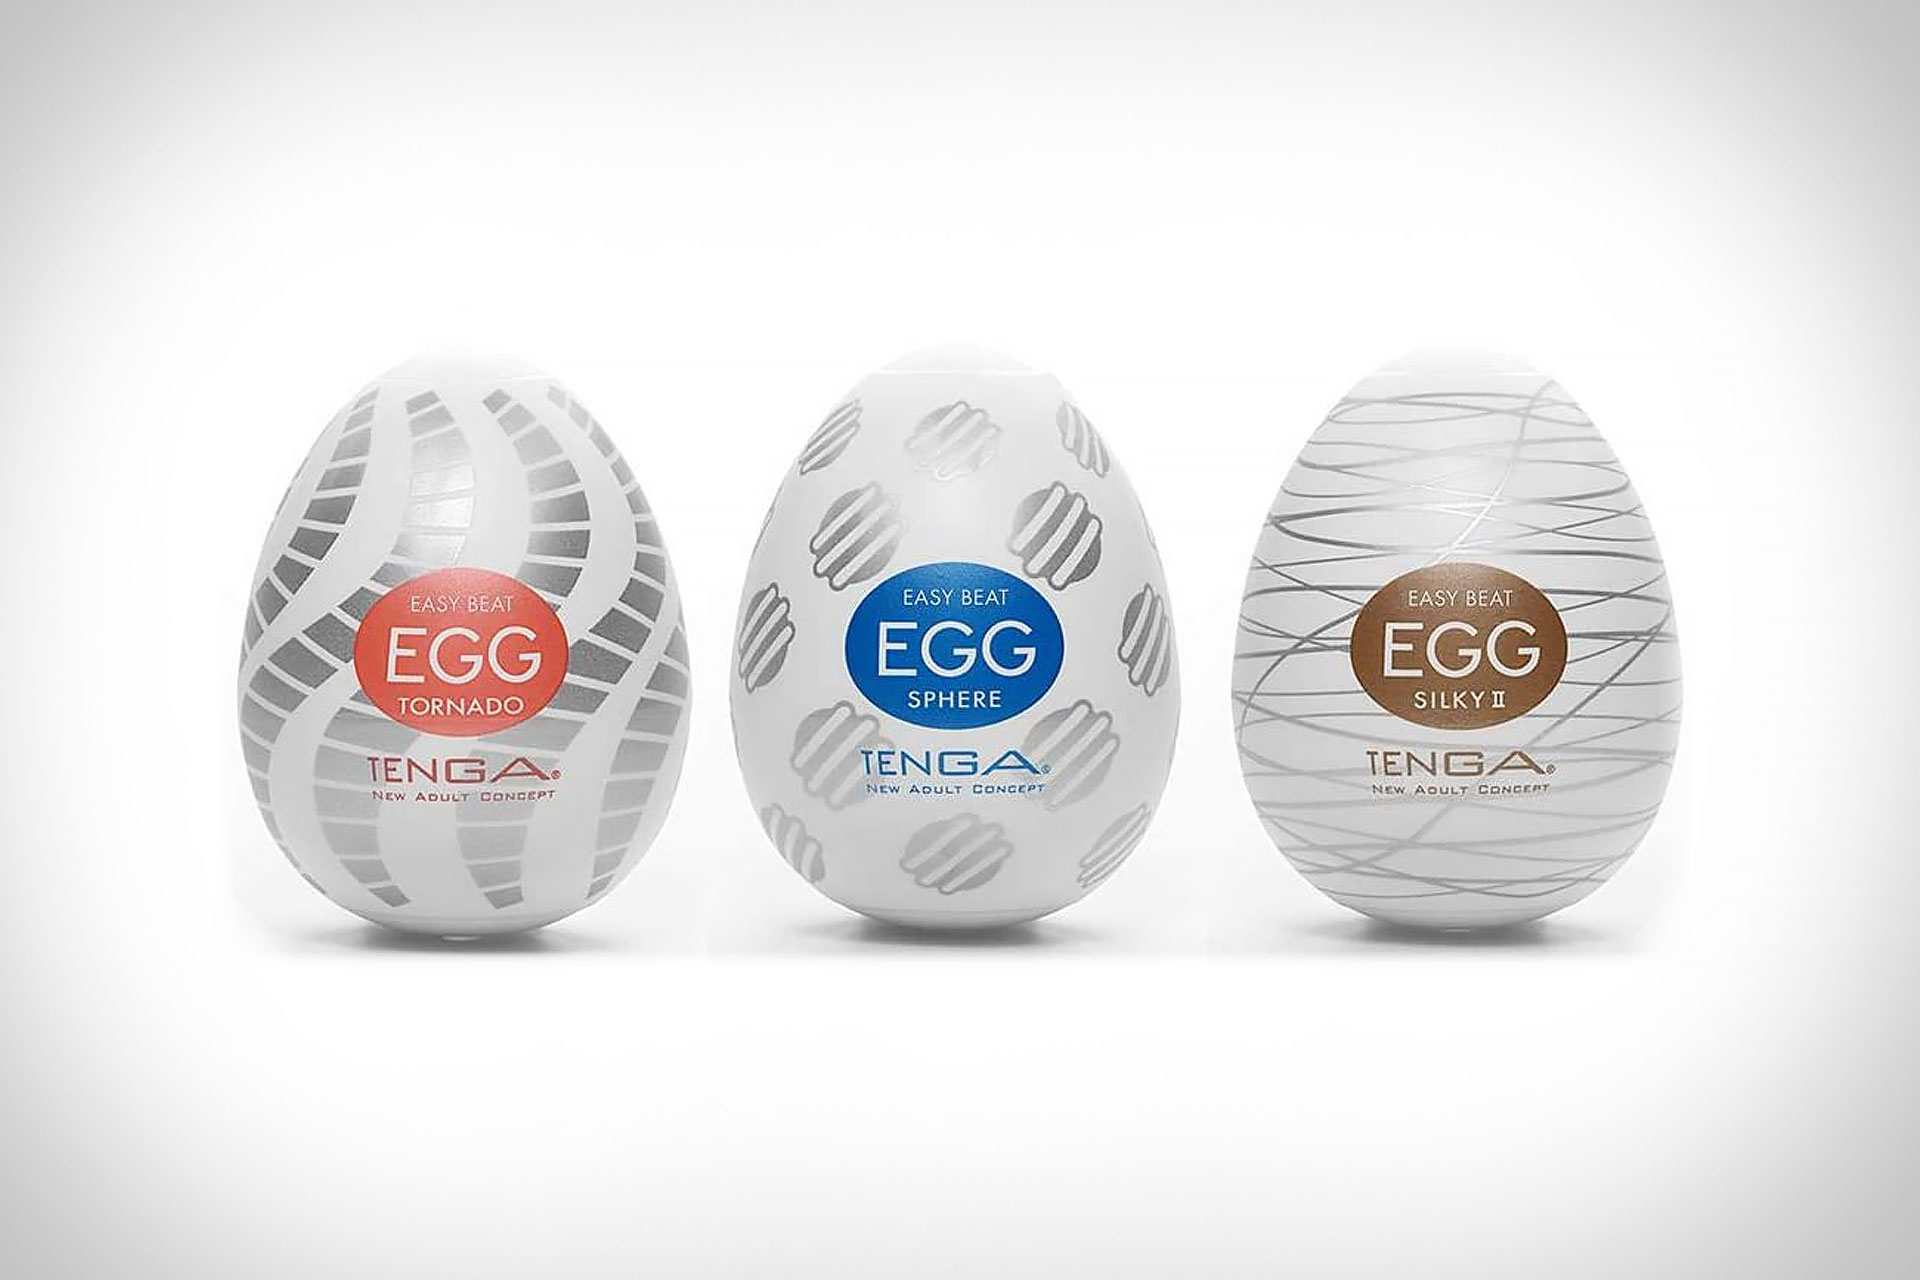 What Are Tenga Eggs